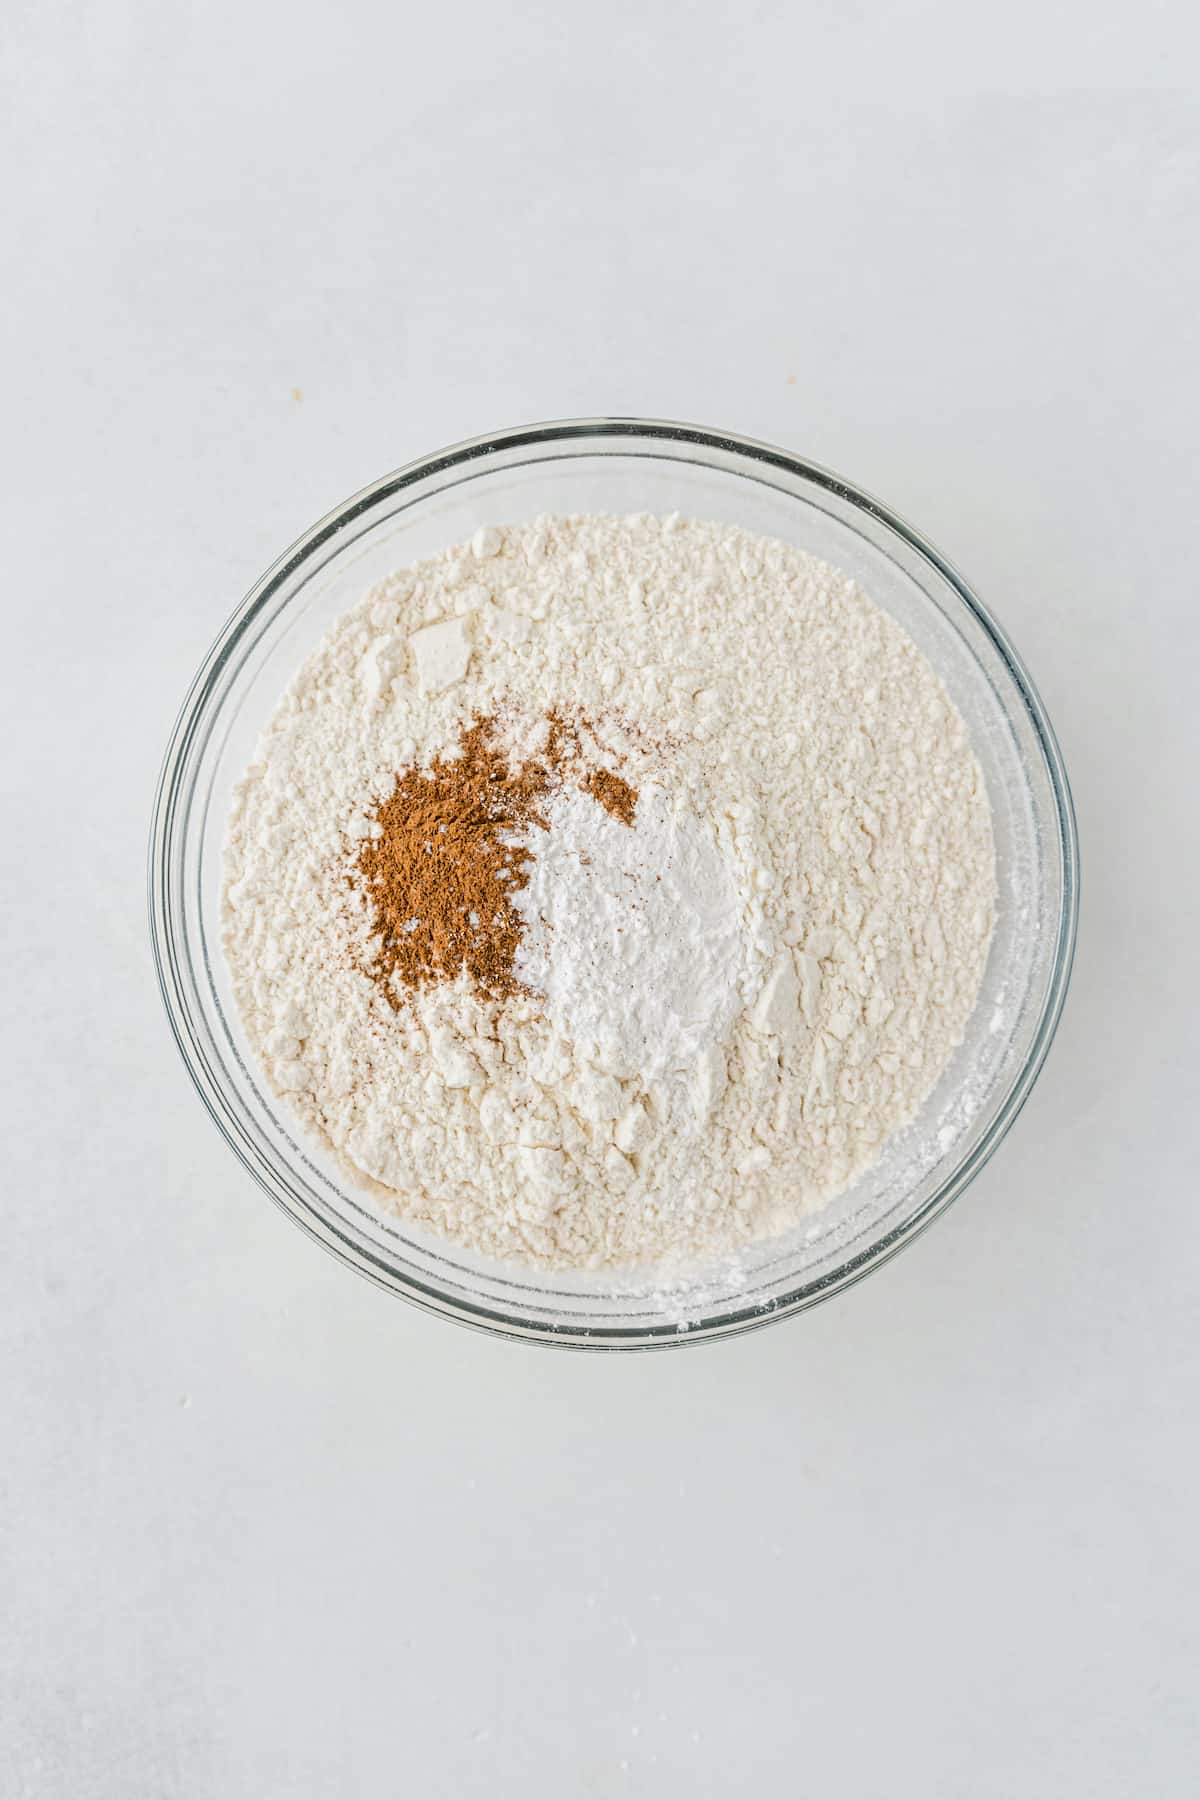 Flour, baking powder, cinnamon, and salt in a glass bowl.